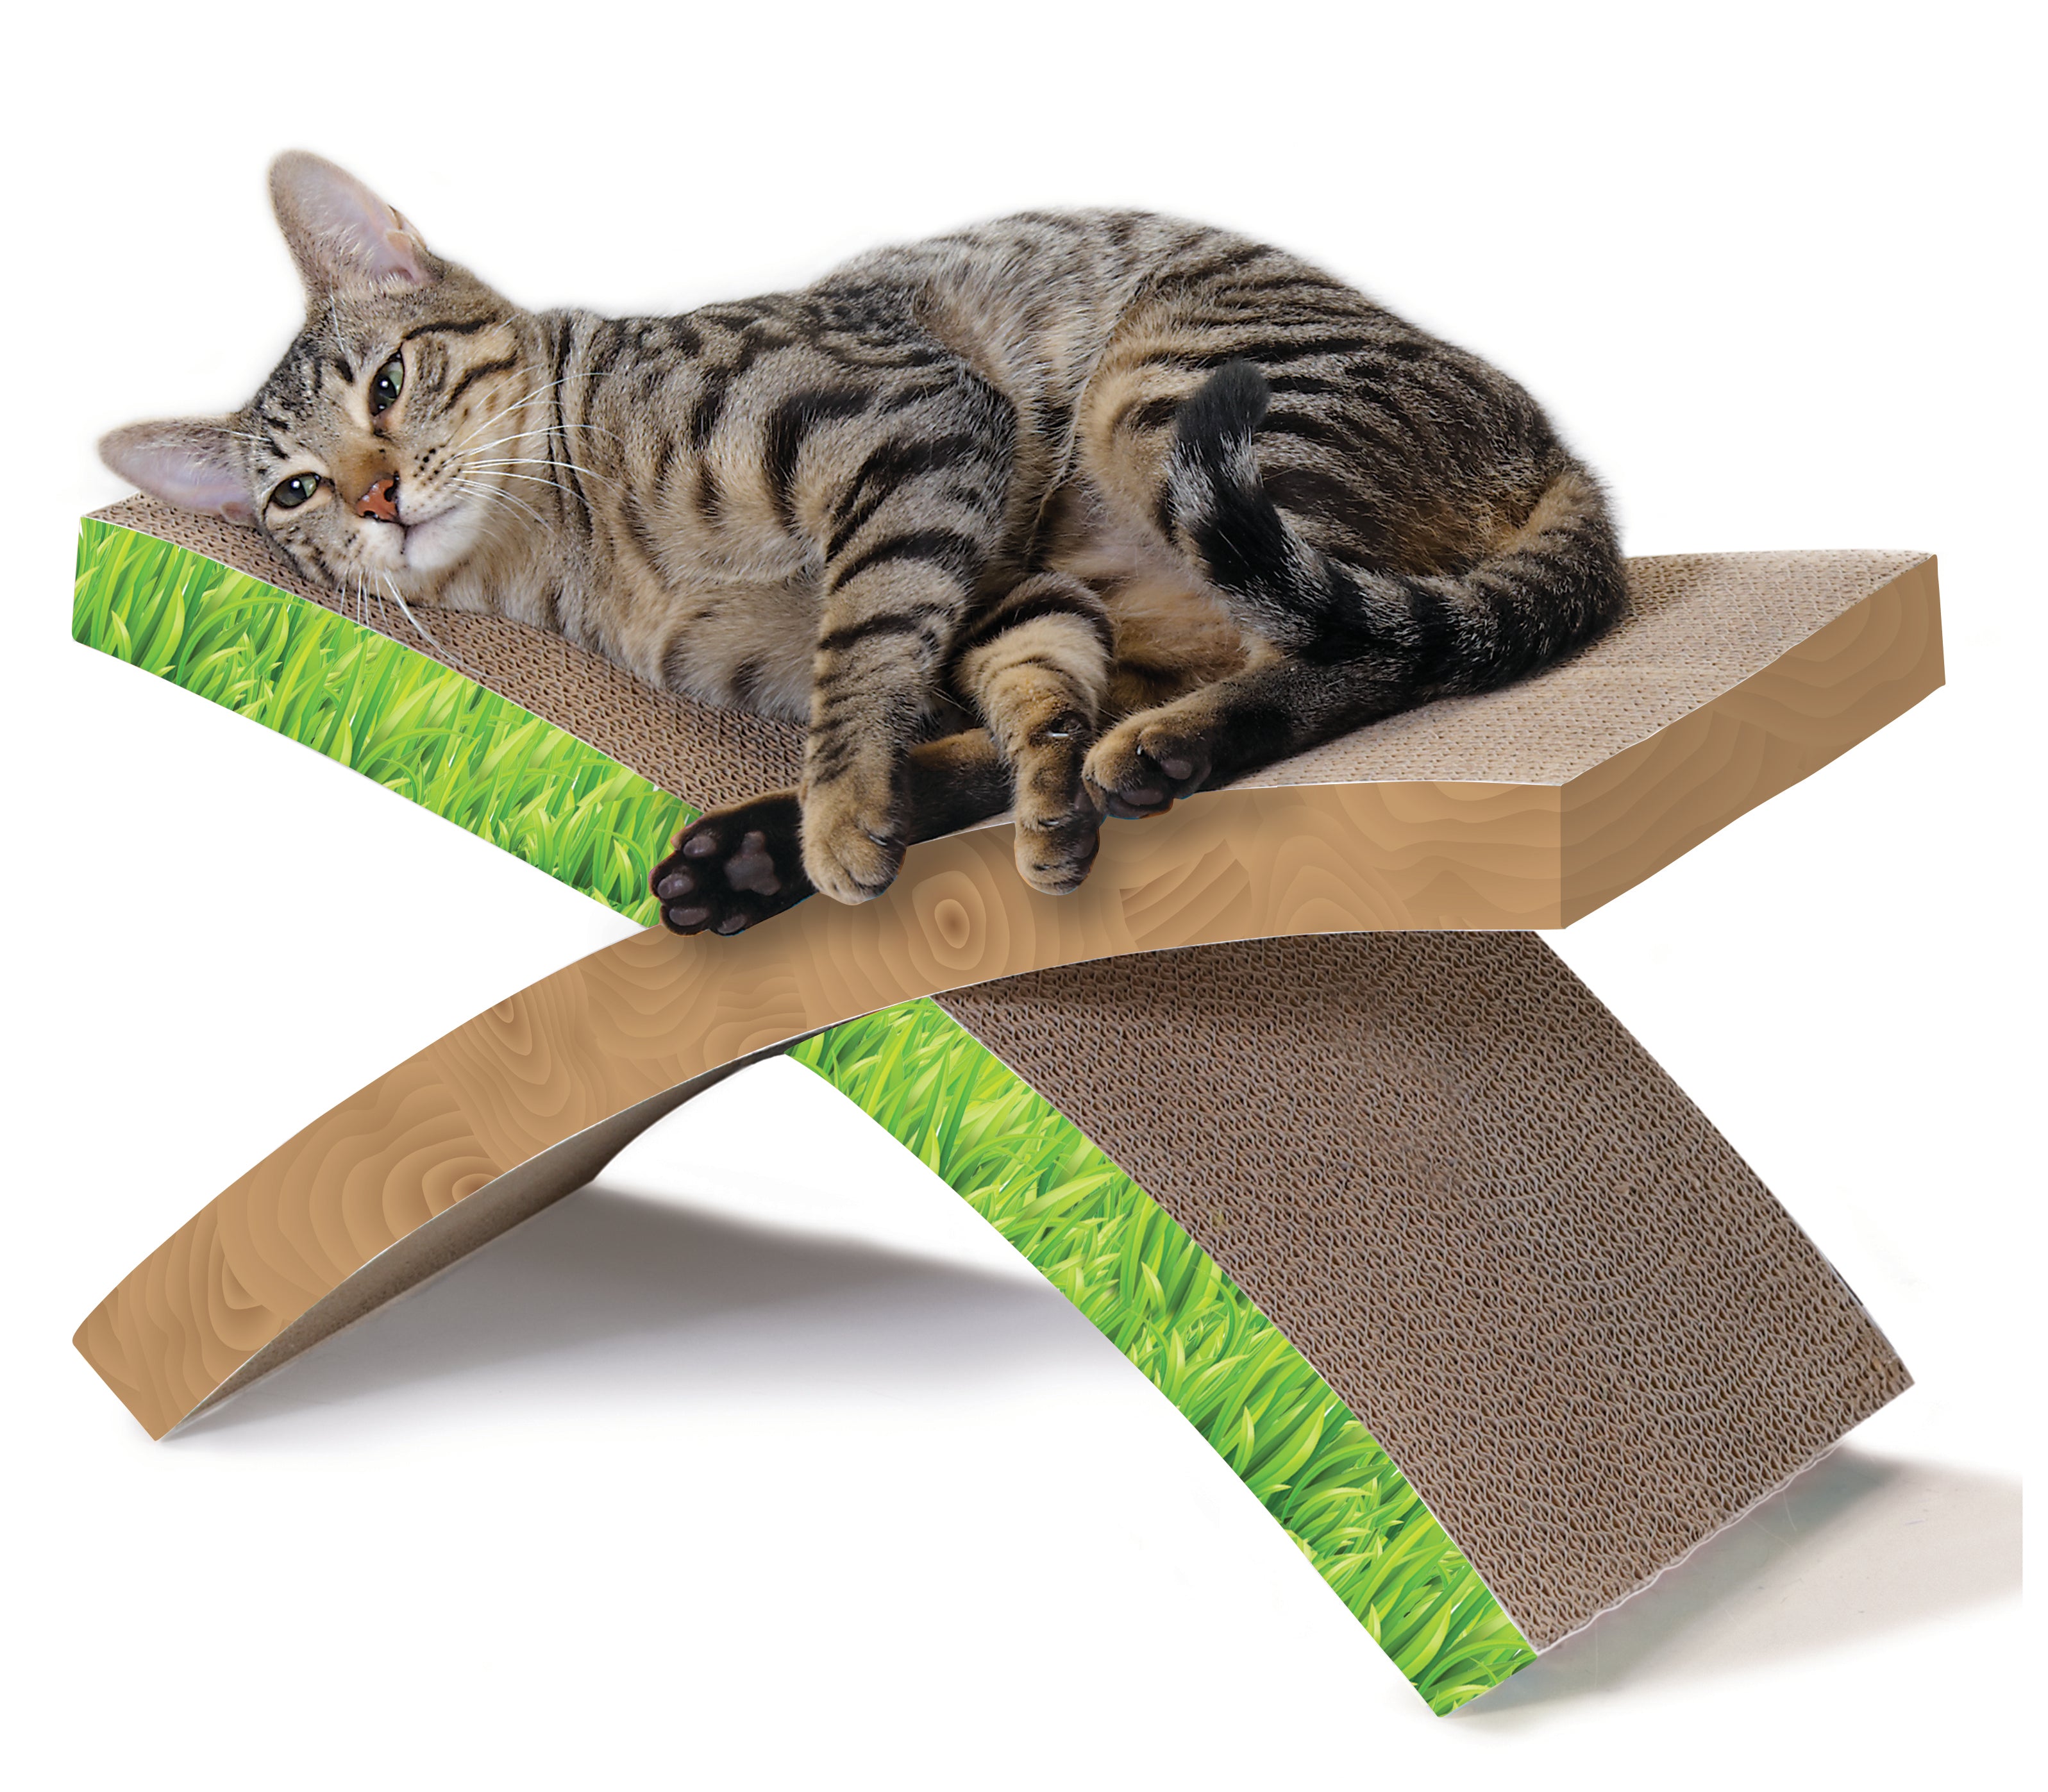 Производство для кошек. Когтеточка-лежанка для кошек. Когтеточка с лежанкой. Картонный лежак для кошек. Лежанка для кота из картона.